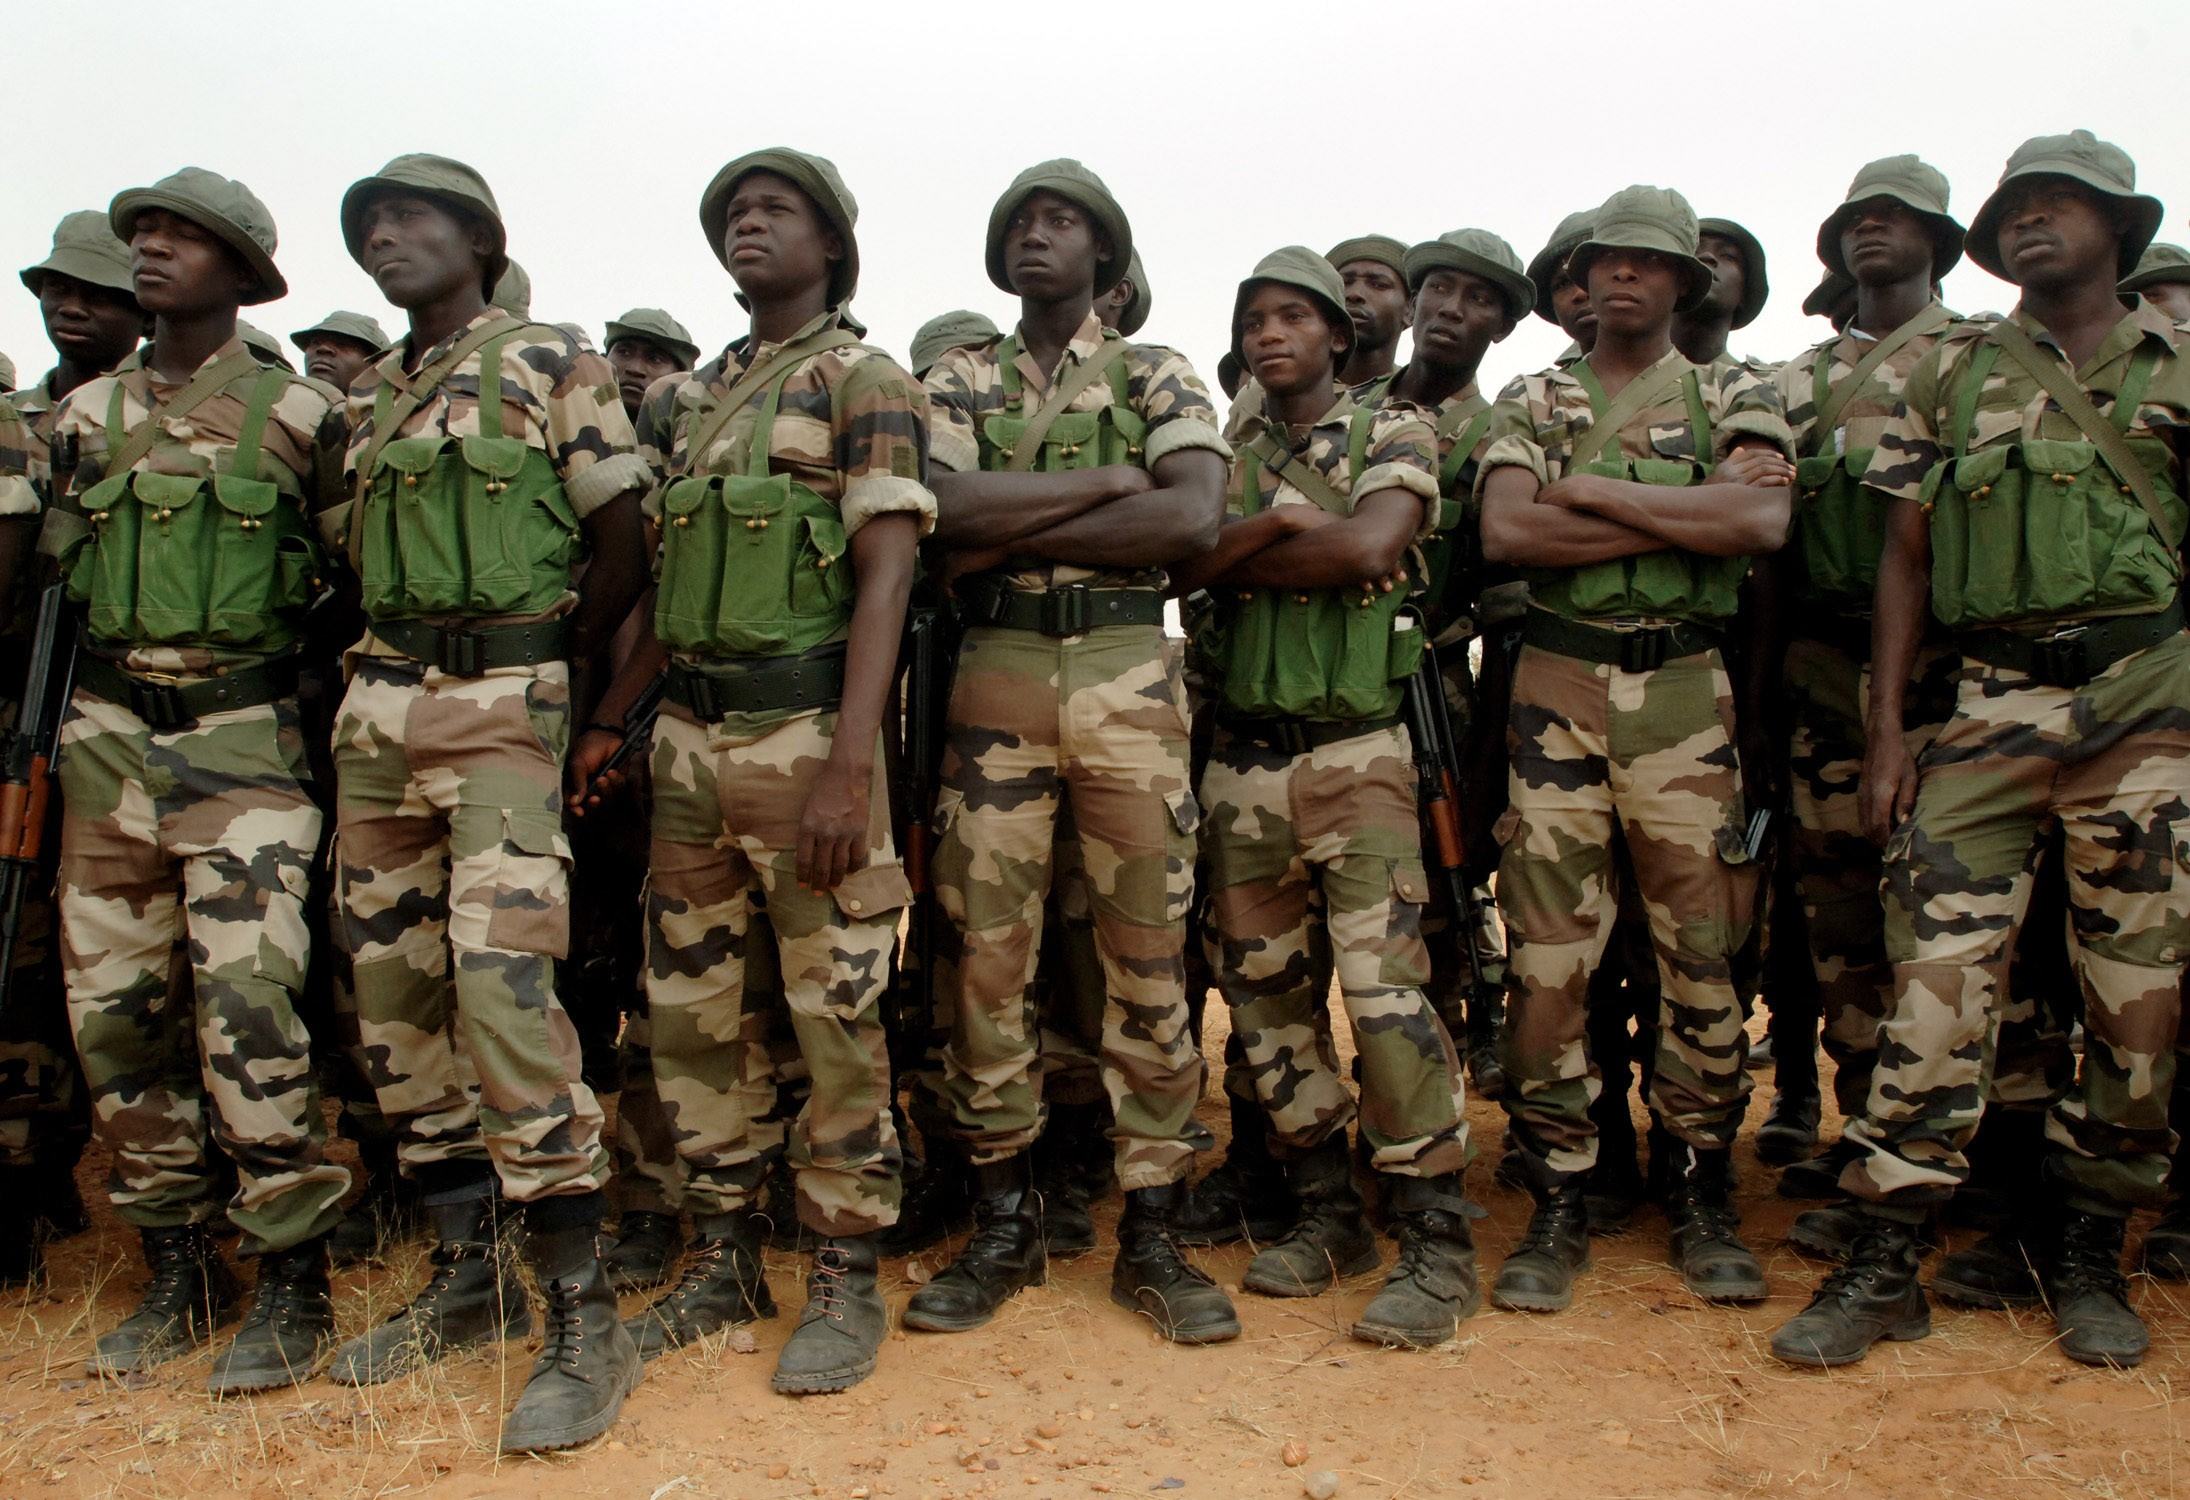 नाइजीरियाई बलों ने एक सप्ताह में बोको हराम से 1,880 नागरिकों को बचाया: सेना